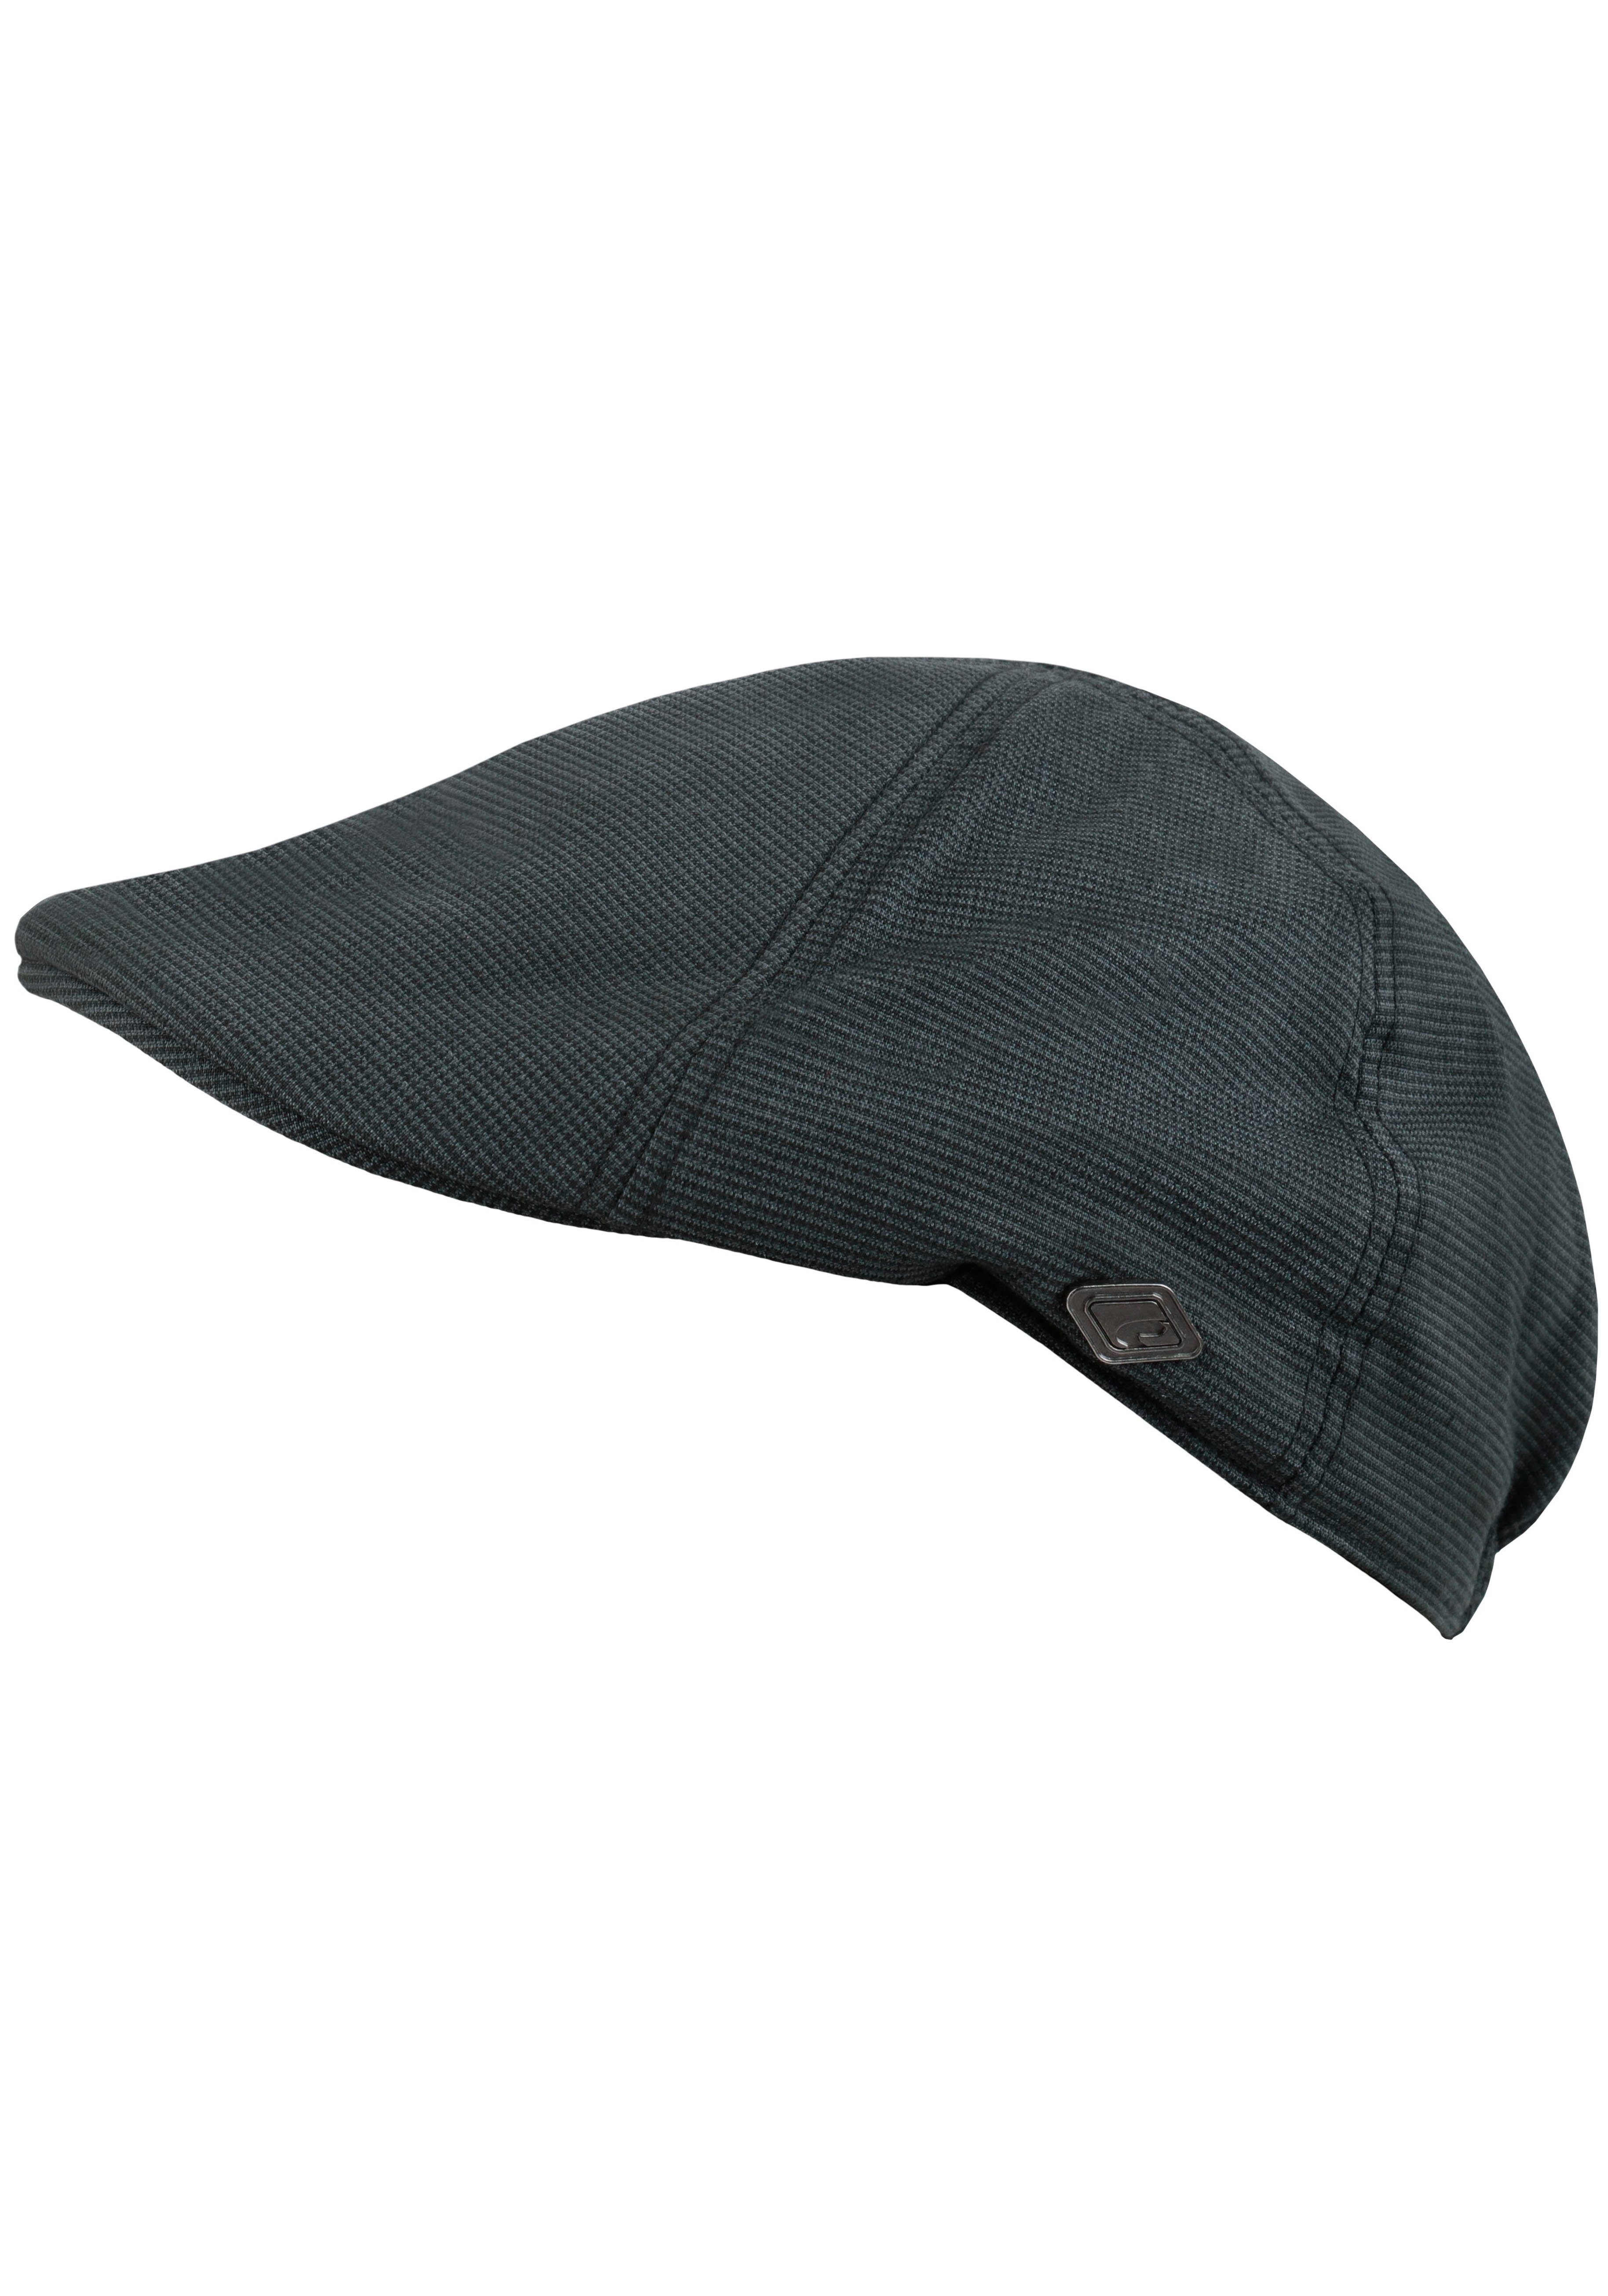 chillouts Schiebermütze Karomuster Flat Cap feinem grau-schwarz Kyoto Hat mit